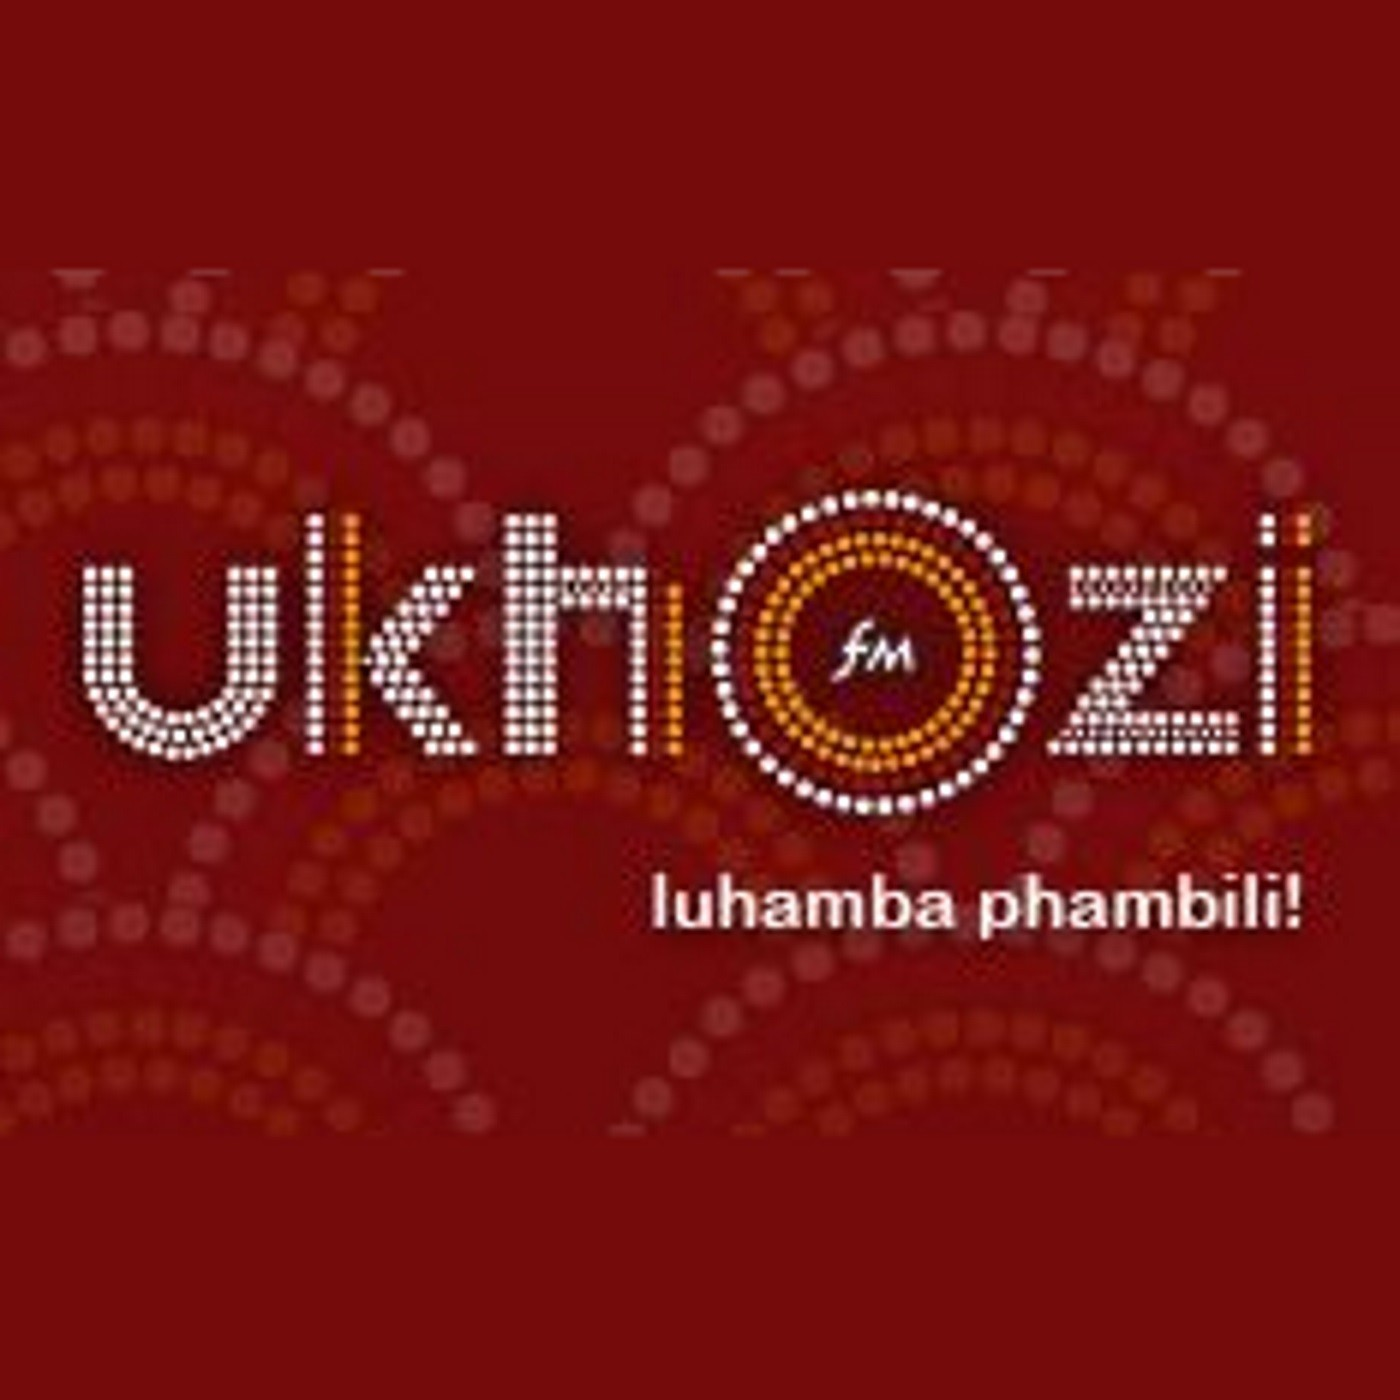 EZEZIMOTO NO SBONELO MYENI (Ubungozi be instalment take over yemoto)